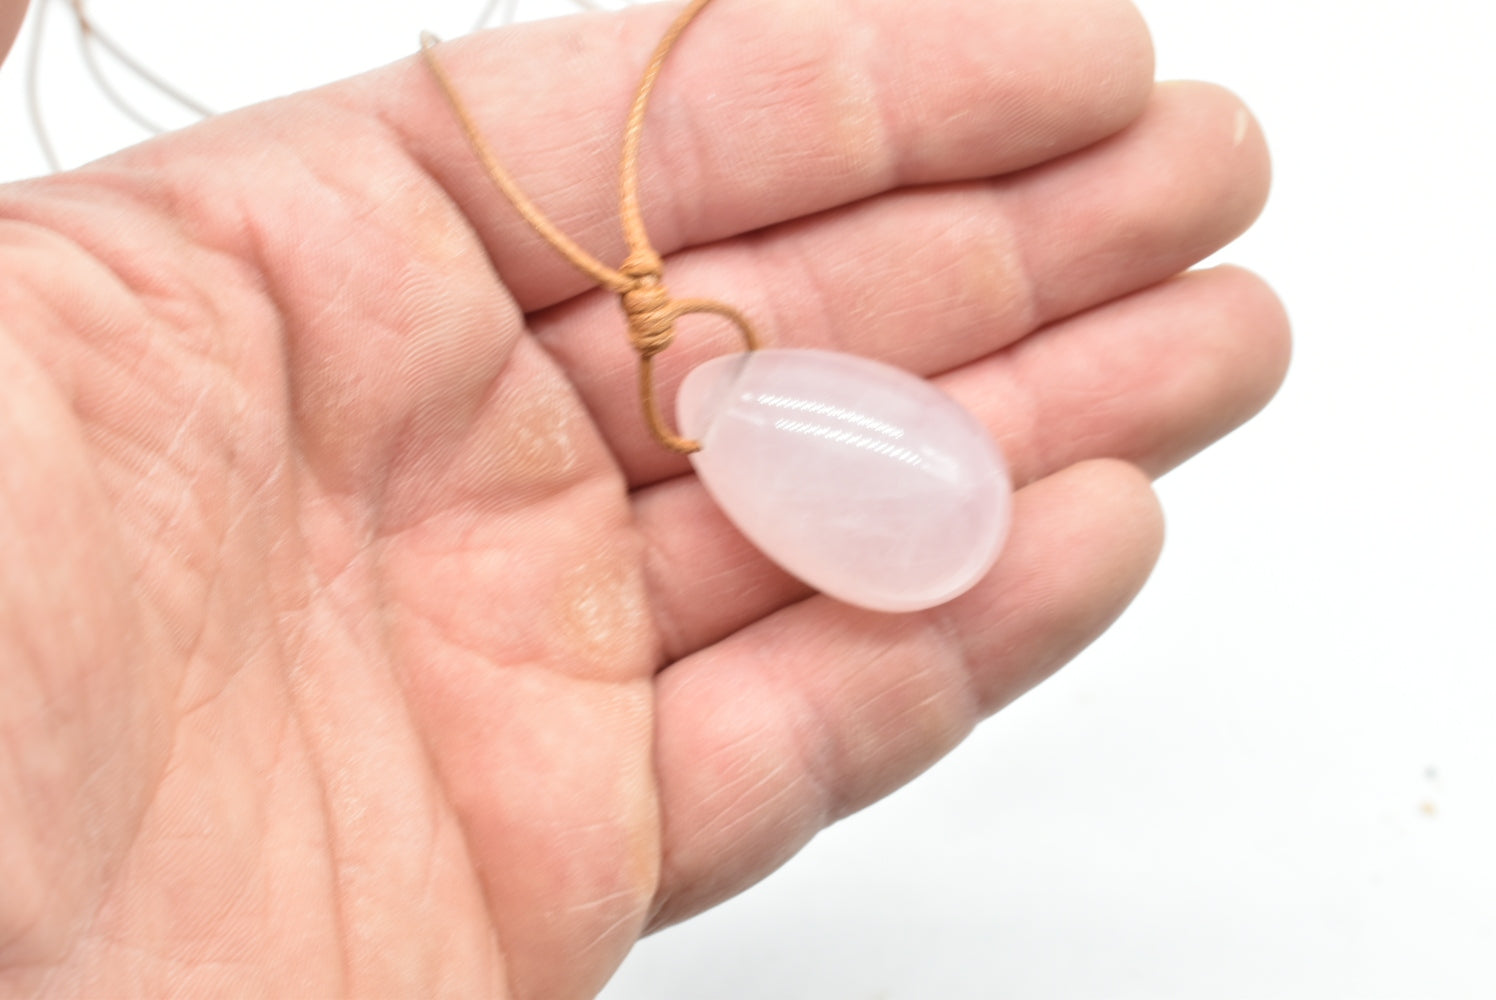 Rose quartz egg pendant